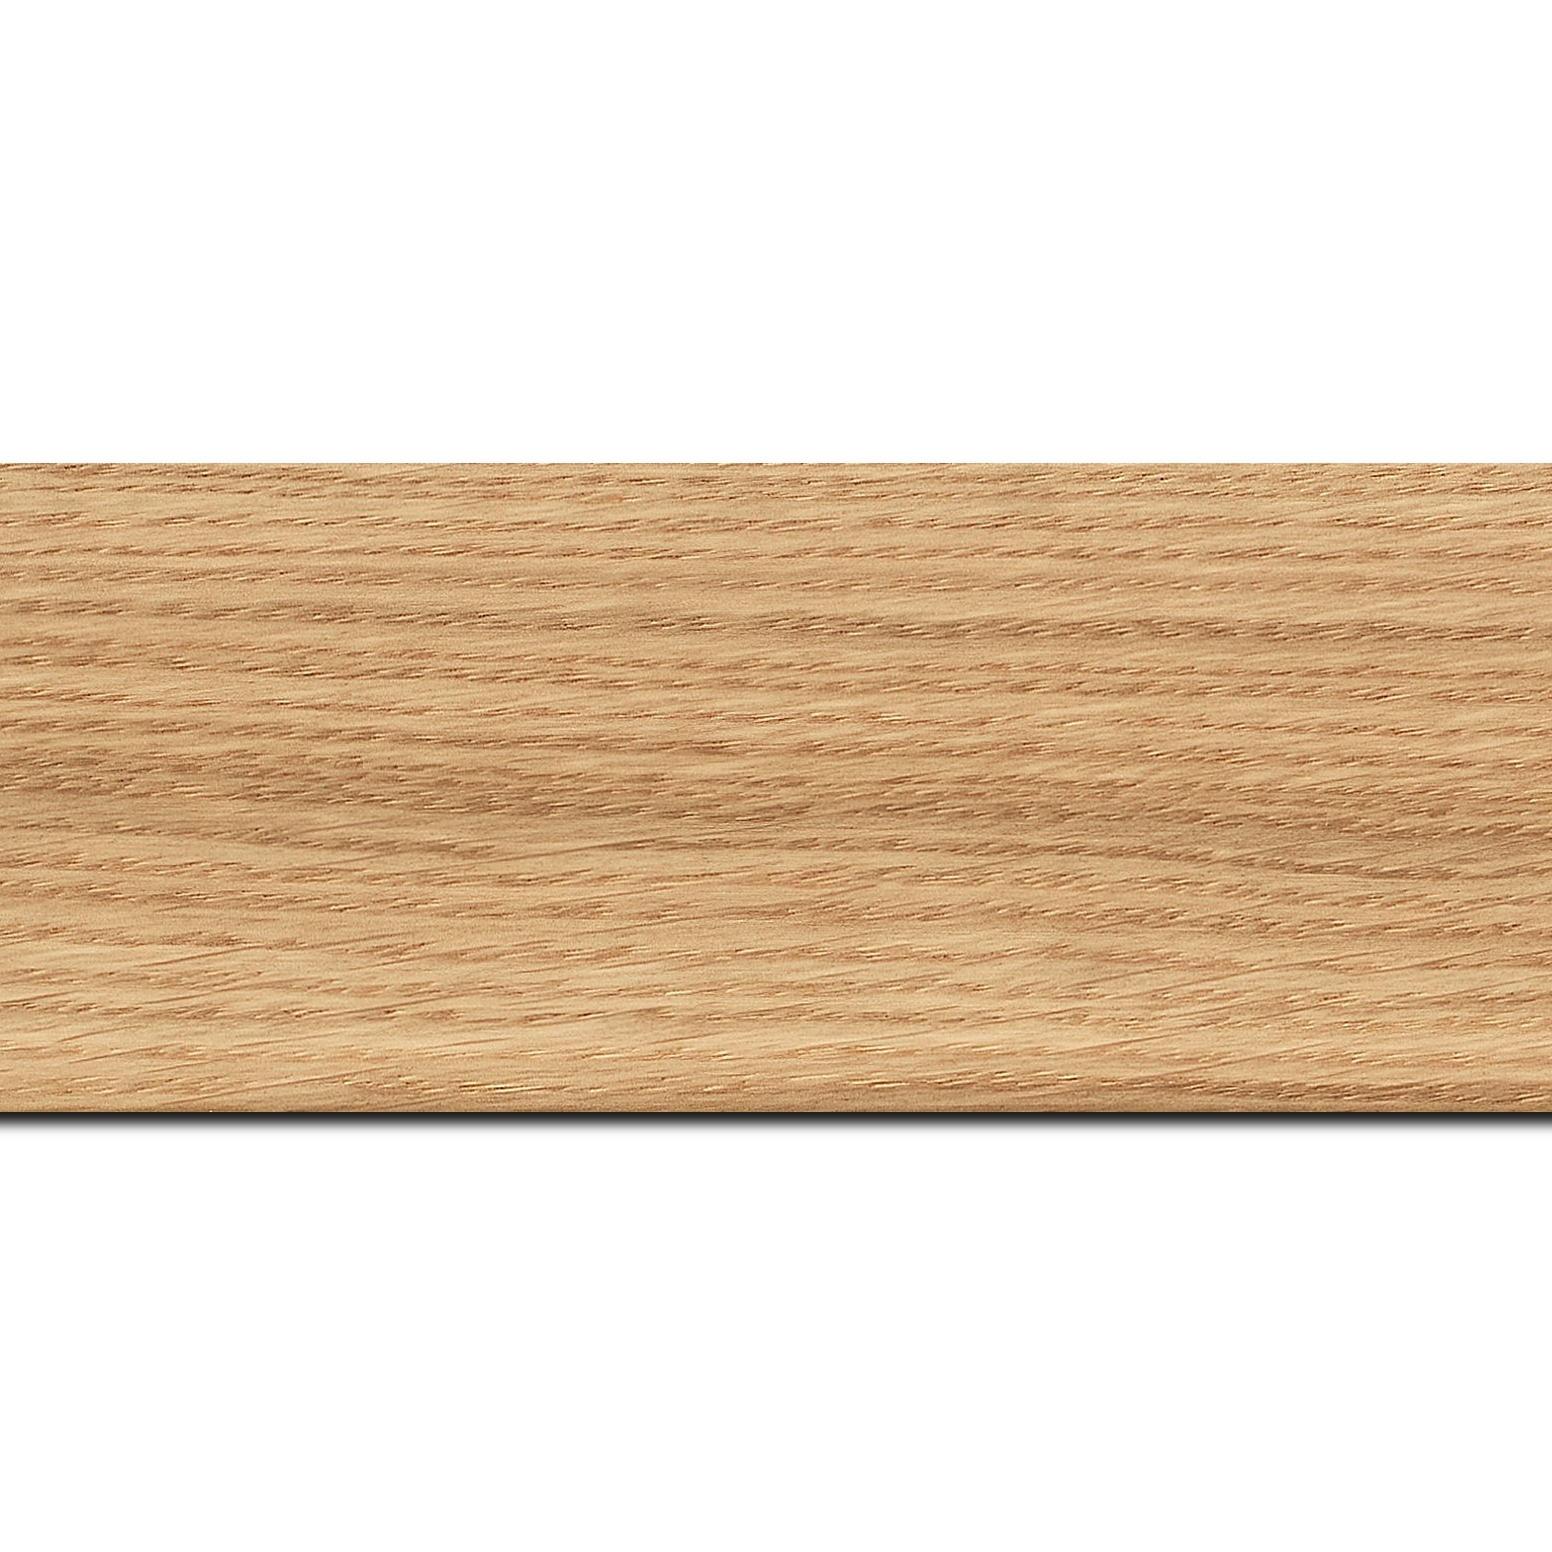 Pack par 12m, bois profil plat largeur 6.3cm plaquage haut de gamme chêne naturel(longueur baguette pouvant varier entre 2.40m et 3m selon arrivage des bois)